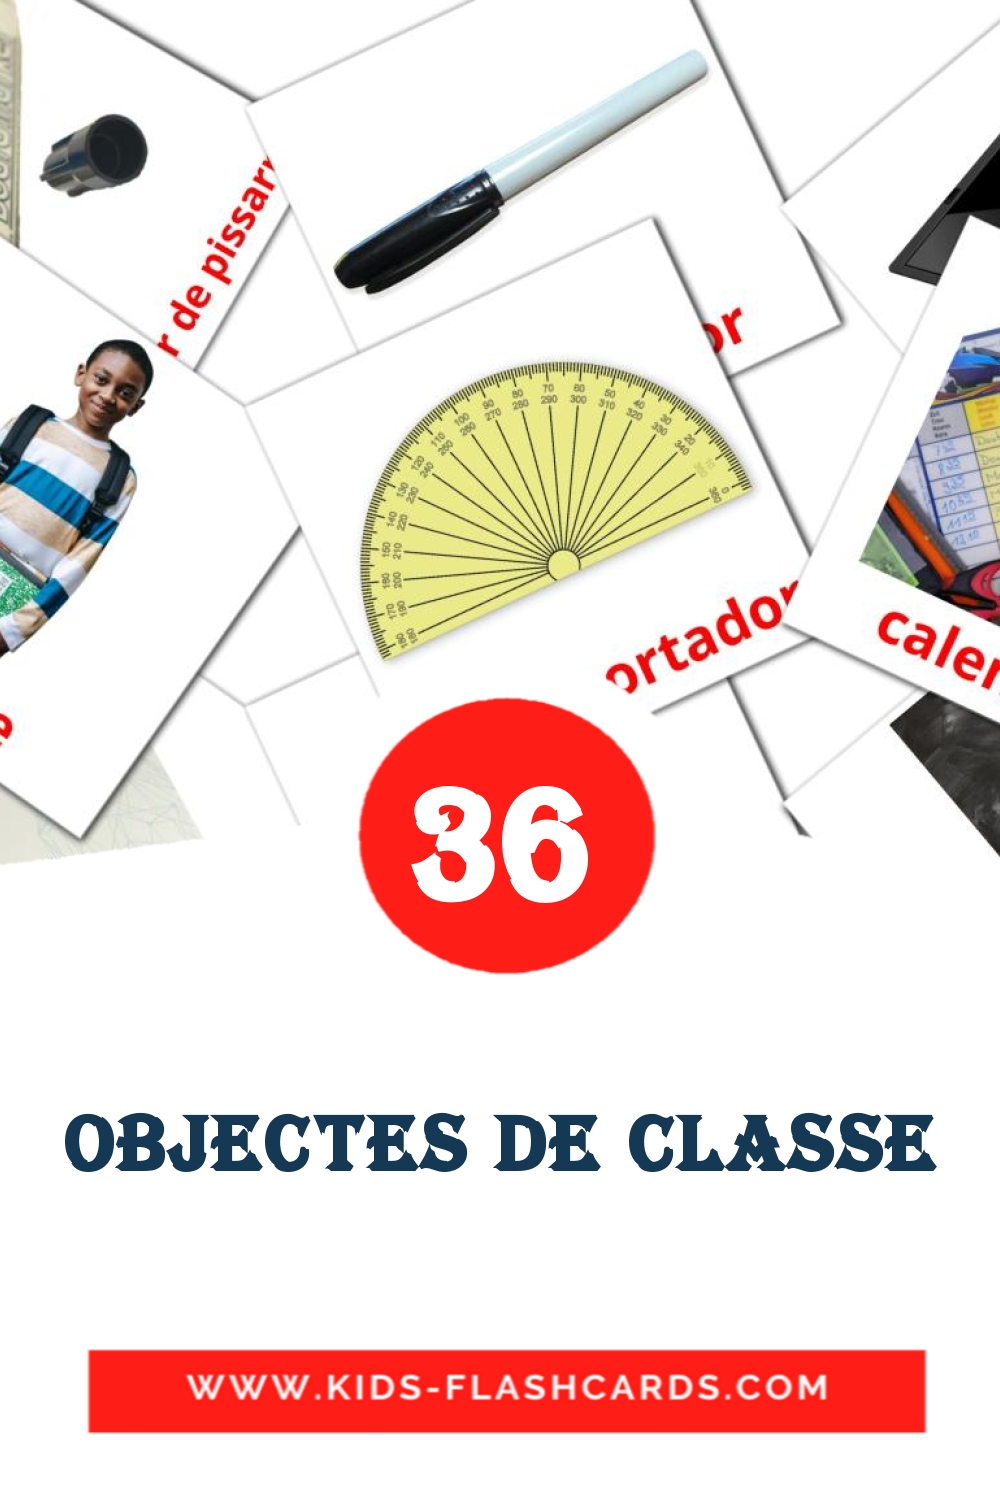 36 carte illustrate di Objectes de classe per la scuola materna in catalano